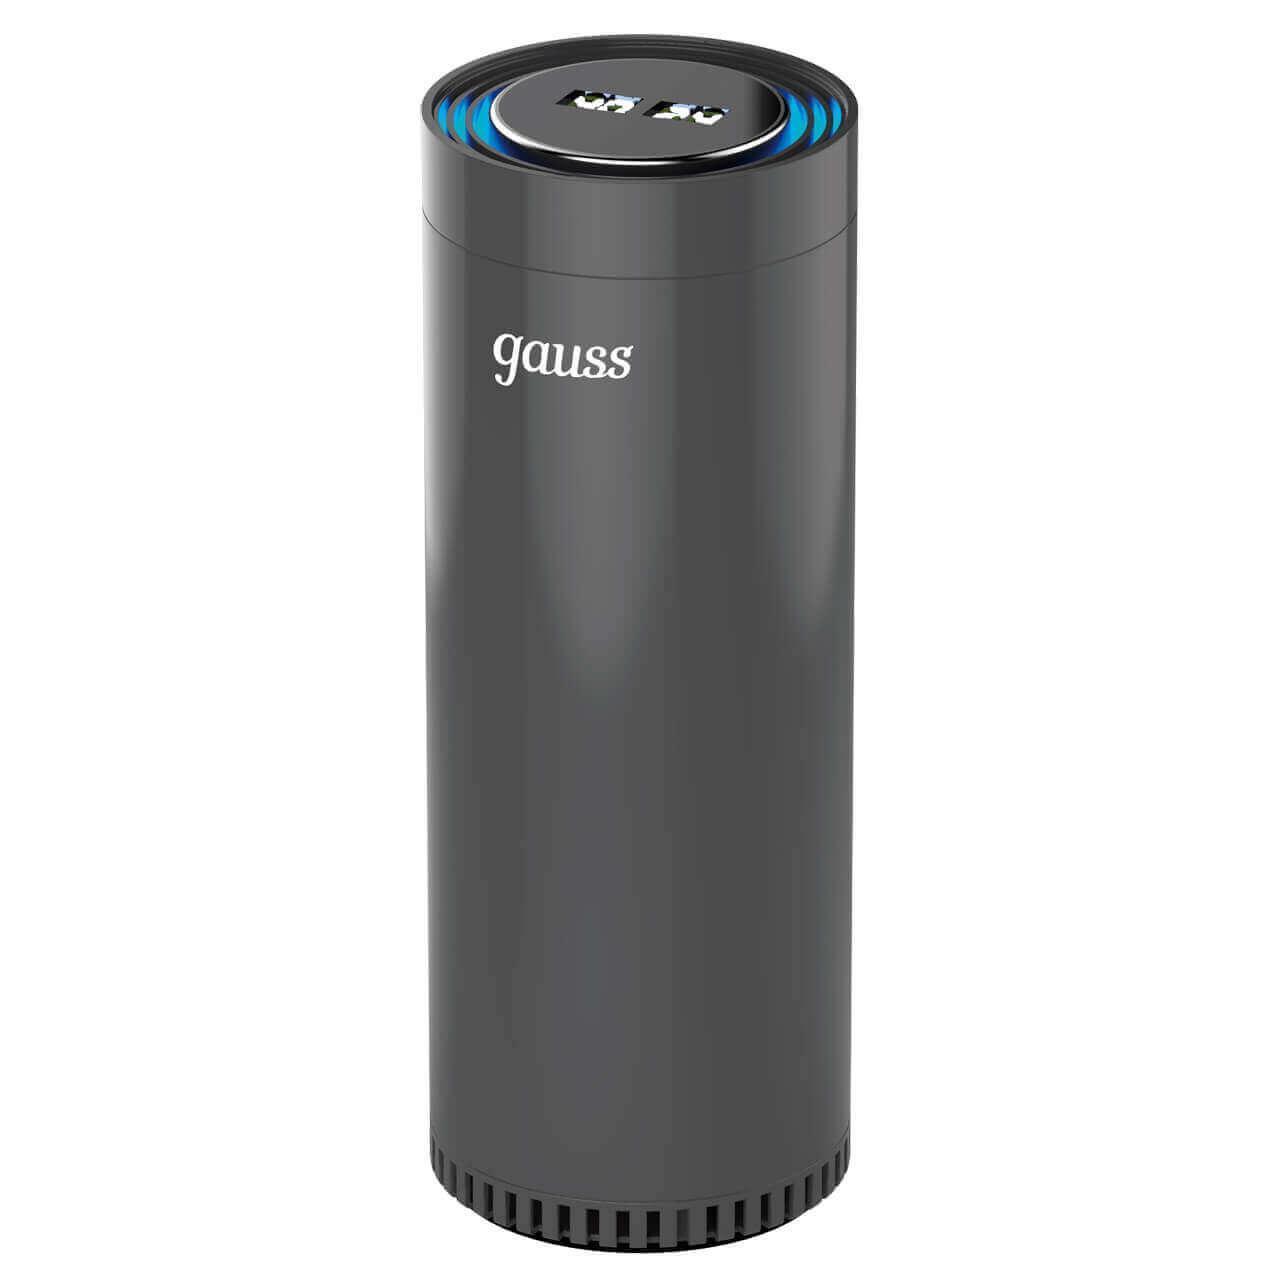 Очиститель воздуха Gauss guard чёрный с ионизатором GR020 очиститель воздуха от пыли и аллергенов с ионизатором